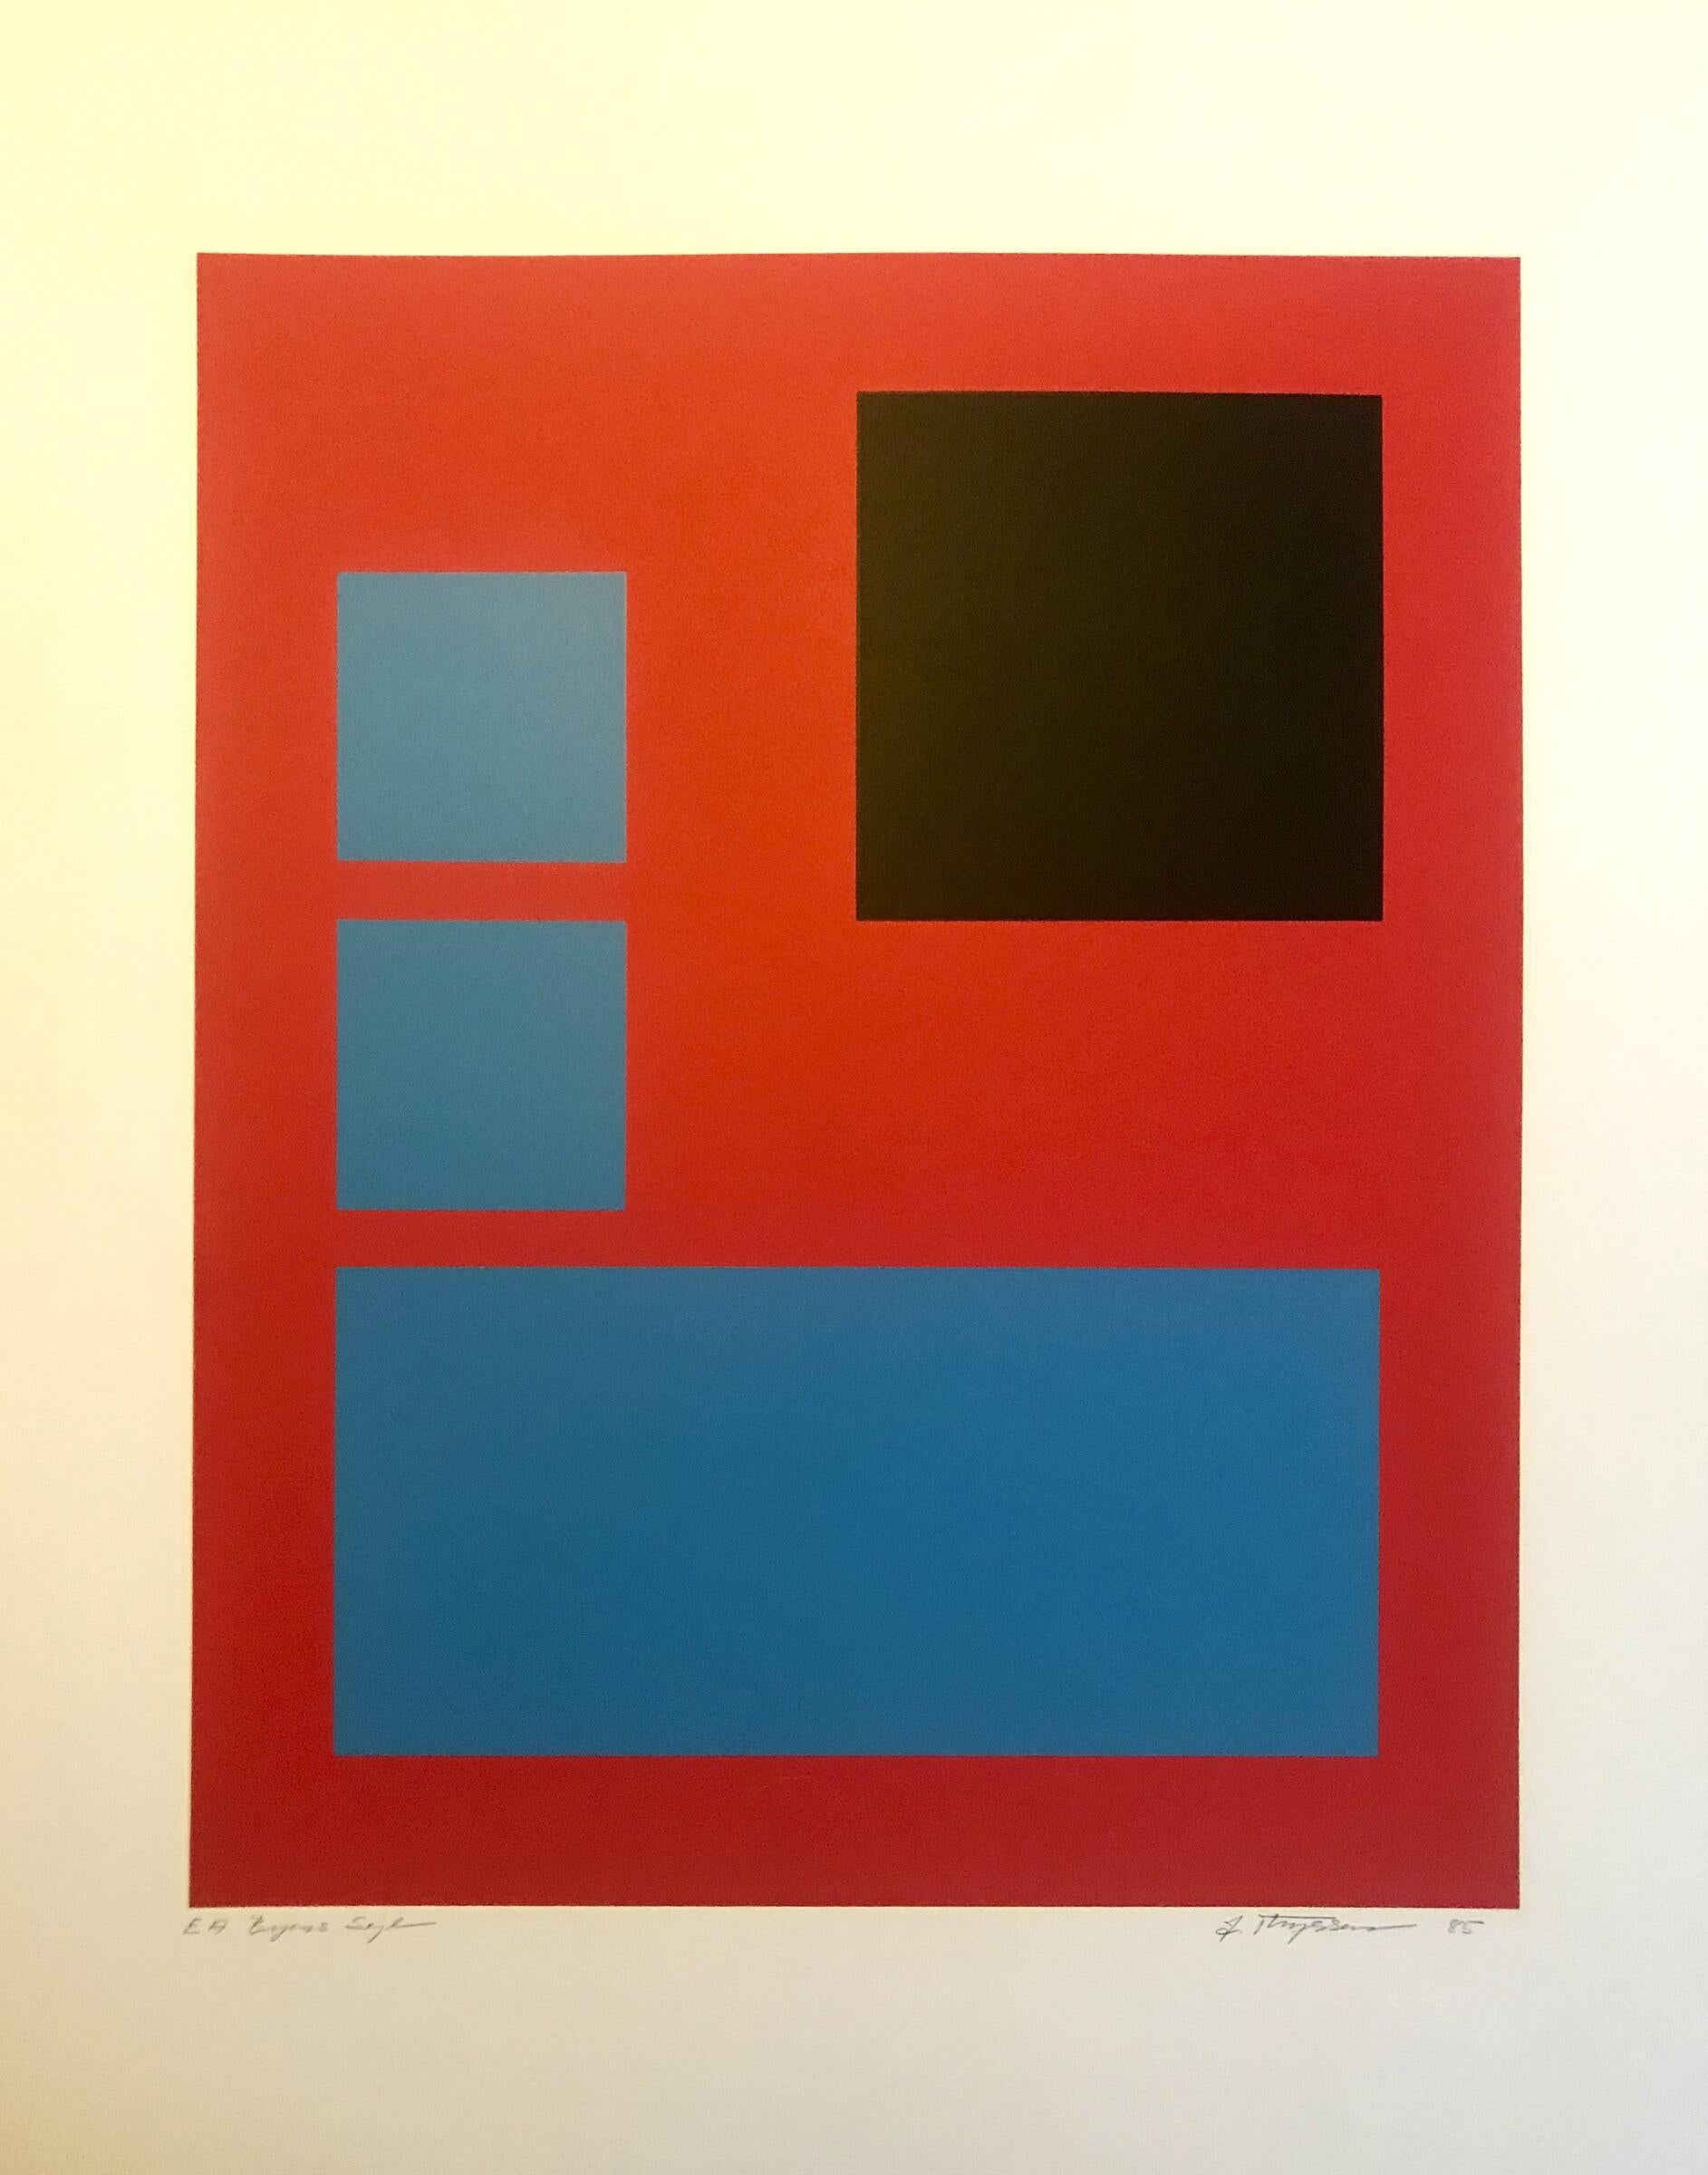 Jette Thyssen Abstract Print – Zusammensetzung, 1985